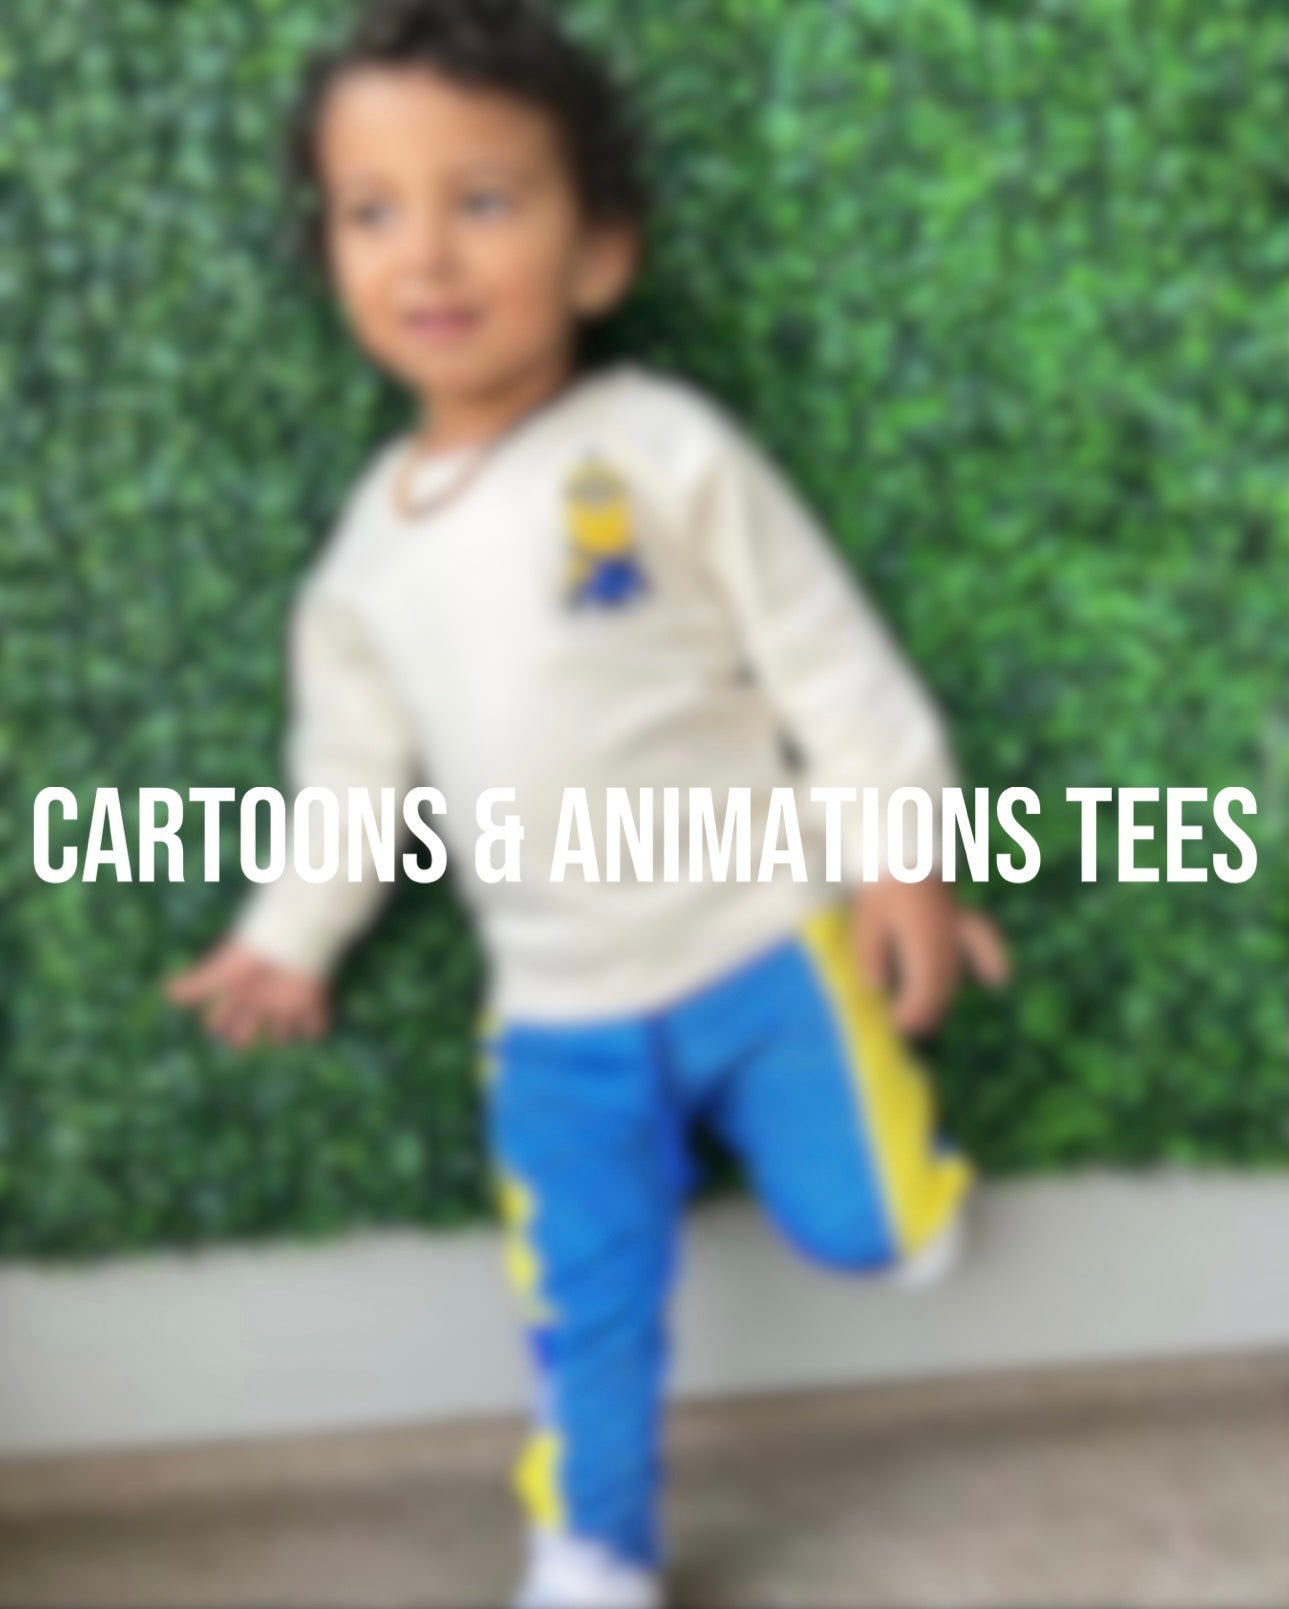 CARTOONS & ANIMATIONS KIDS TEES